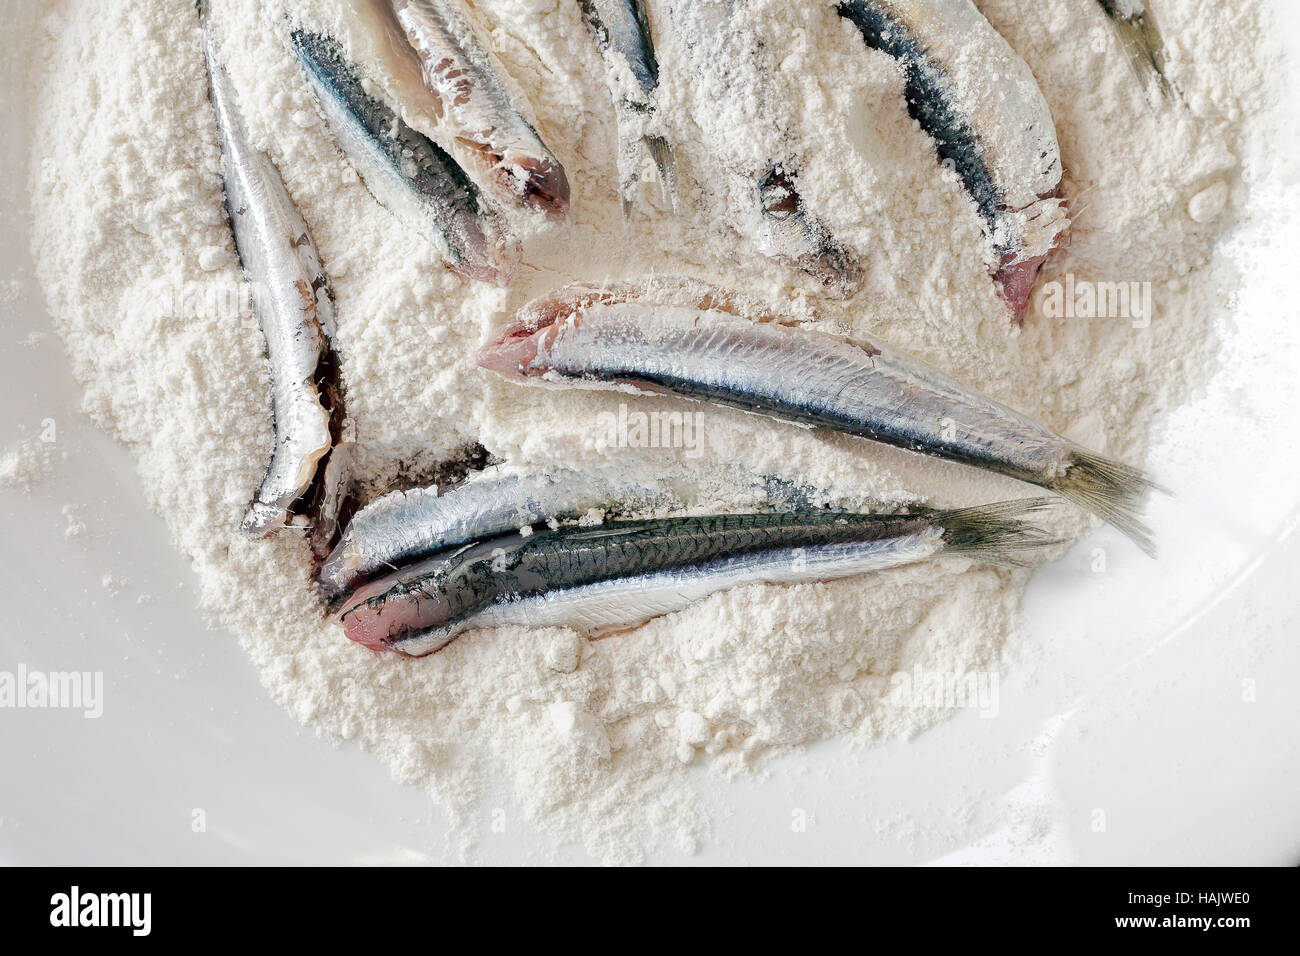 Anchois panés, propre et prêt à être cuisiné. L'anchois dans le plat rempli de la farine blanche. Frire dans l'huile. Banque D'Images